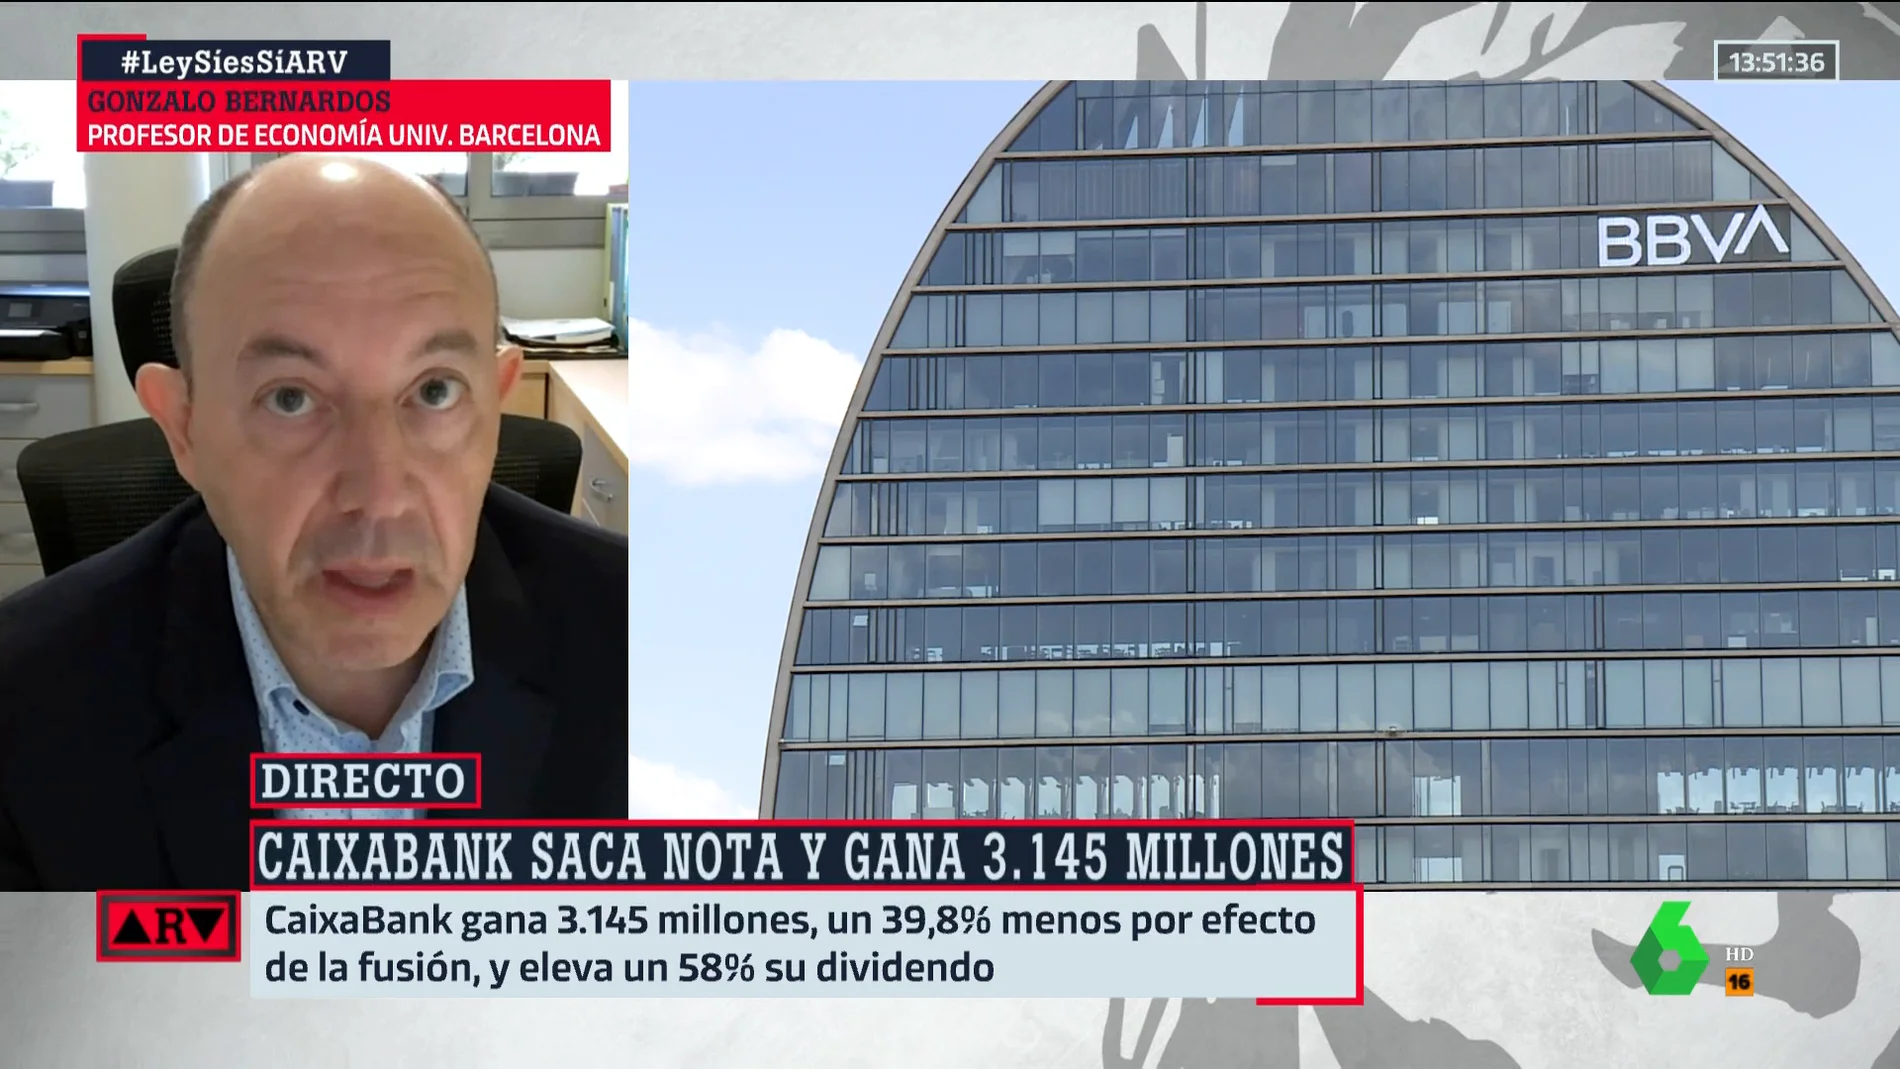 La crítica de Gonzalo Bernardos a los beneficios históricos de la banca: "Es una vergüenza que cobren dos euros por acompañar a un jubilado al cajero"